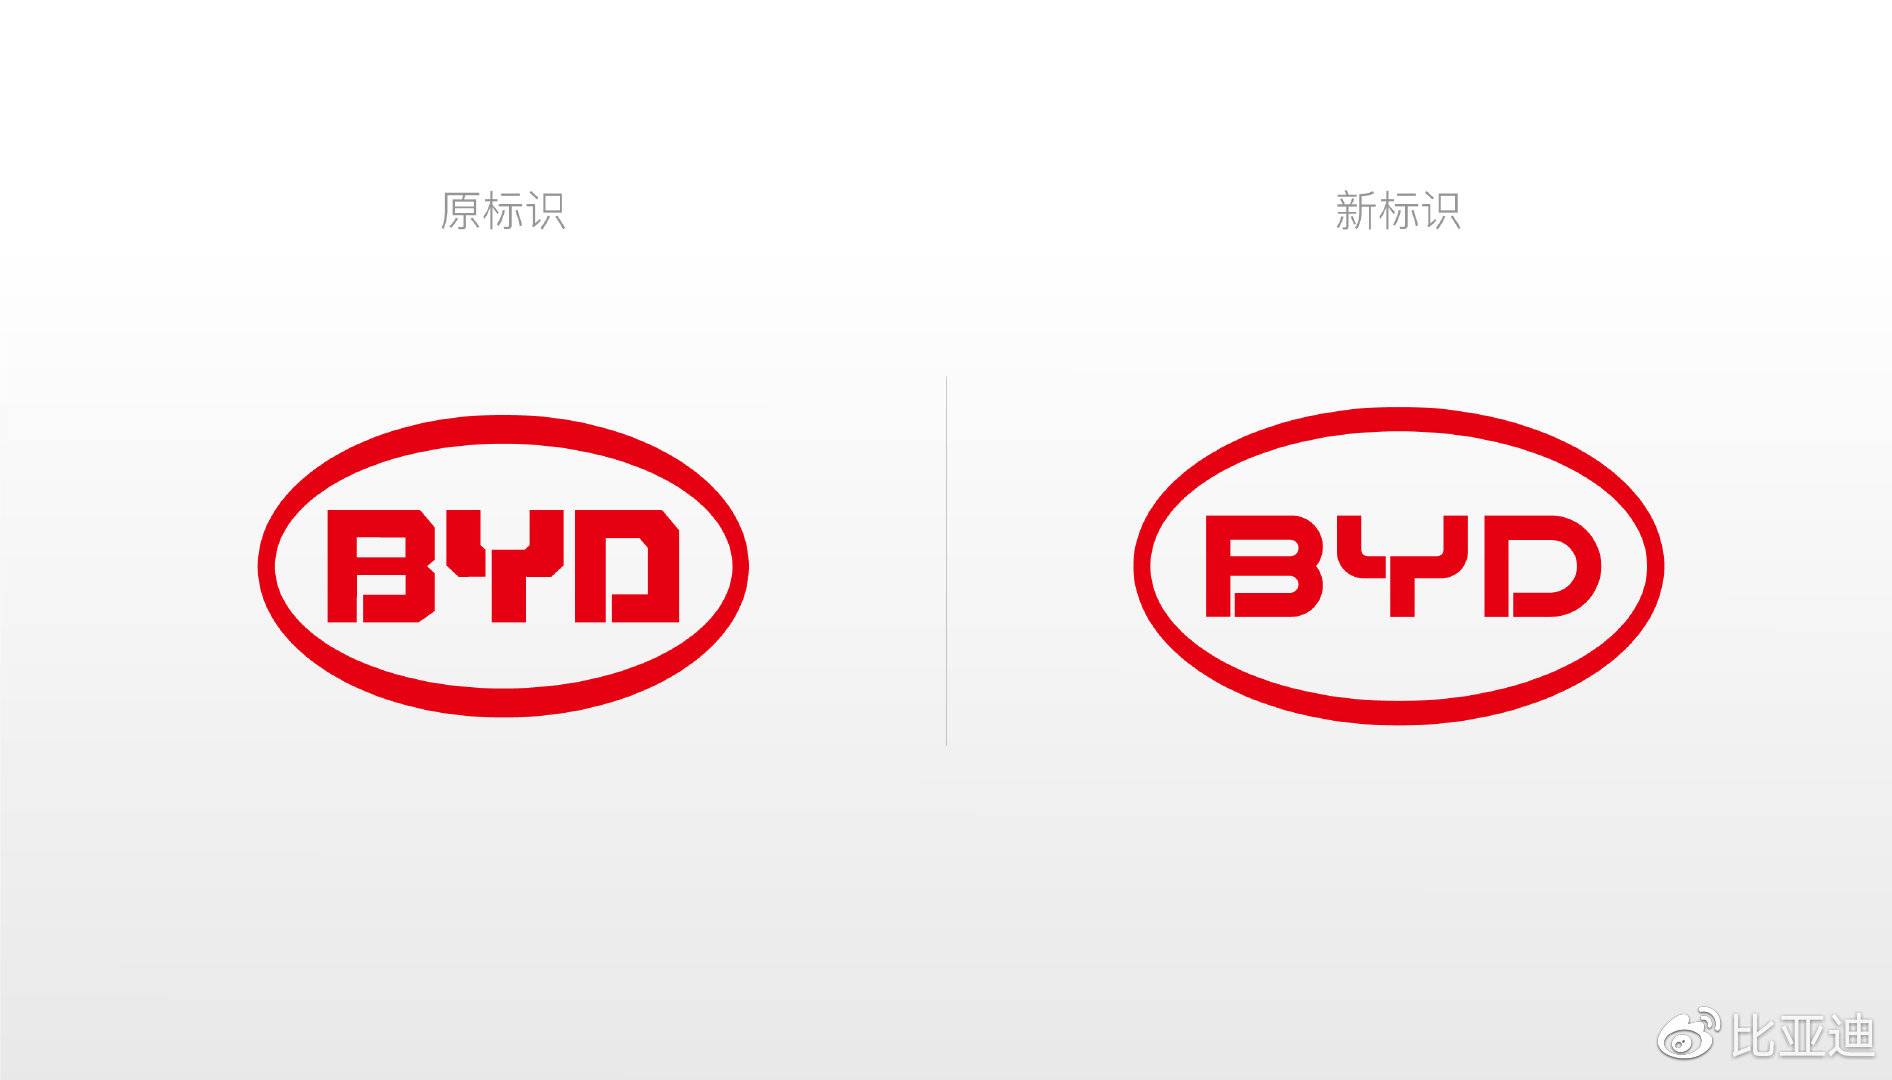 比亚迪换logo品牌升级 新旧logo对比图_2